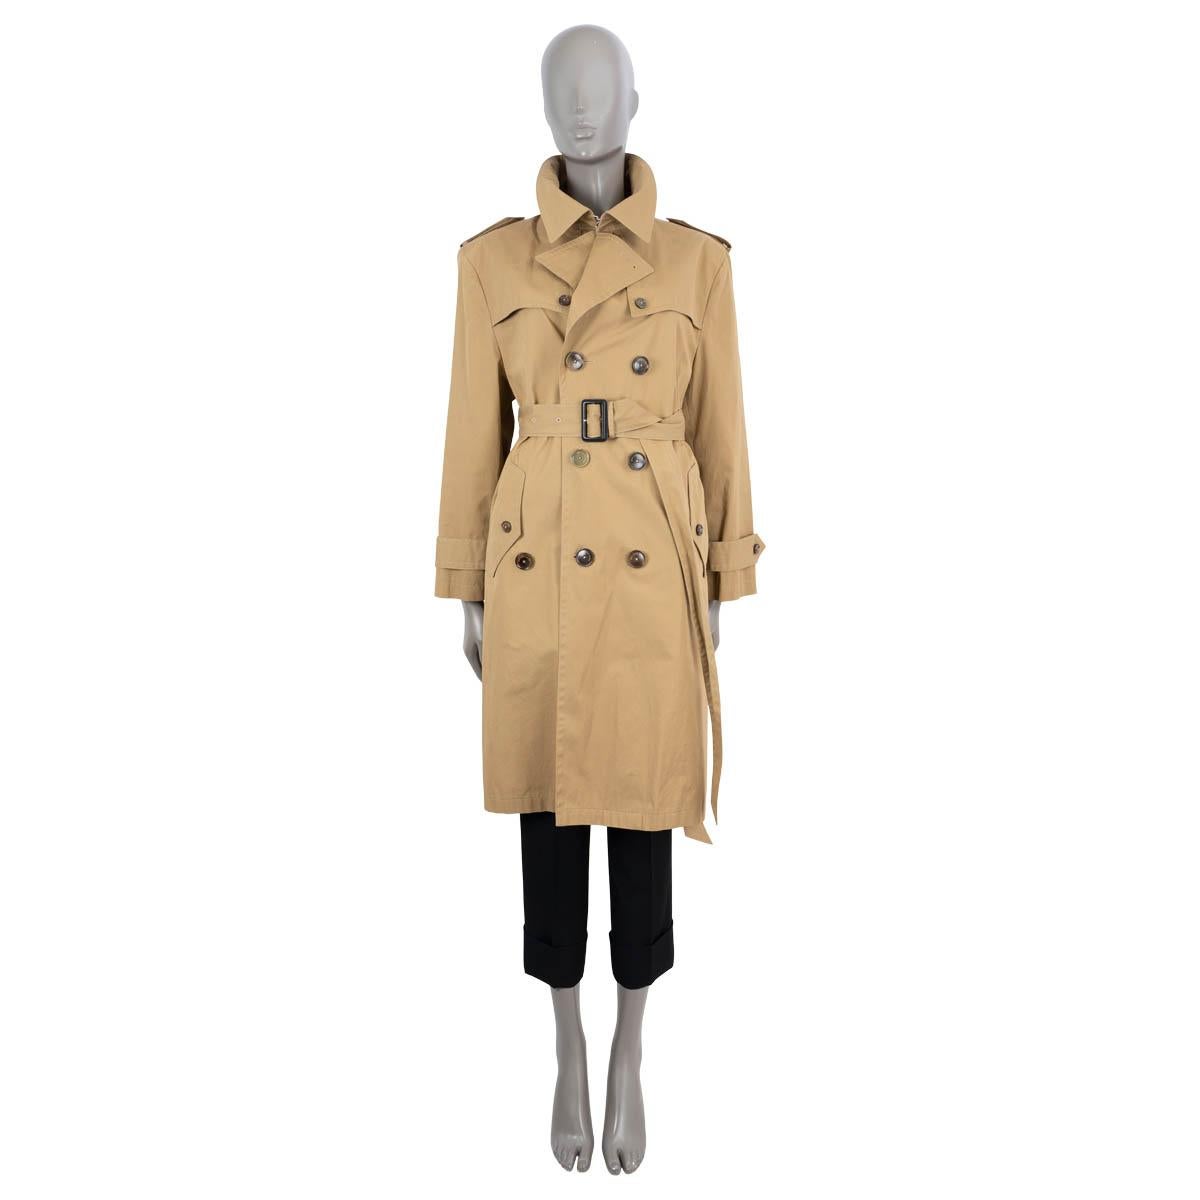 Trench-coat Swing en coton beige (100%) authentique à 100% de Balenciaga. Il est doté d'épaulettes, de poches boutonnées sur le devant et de sangles aux poignets. Se ferme par des boutons et une ceinture. Partiellement doublé de cupro. A été porté